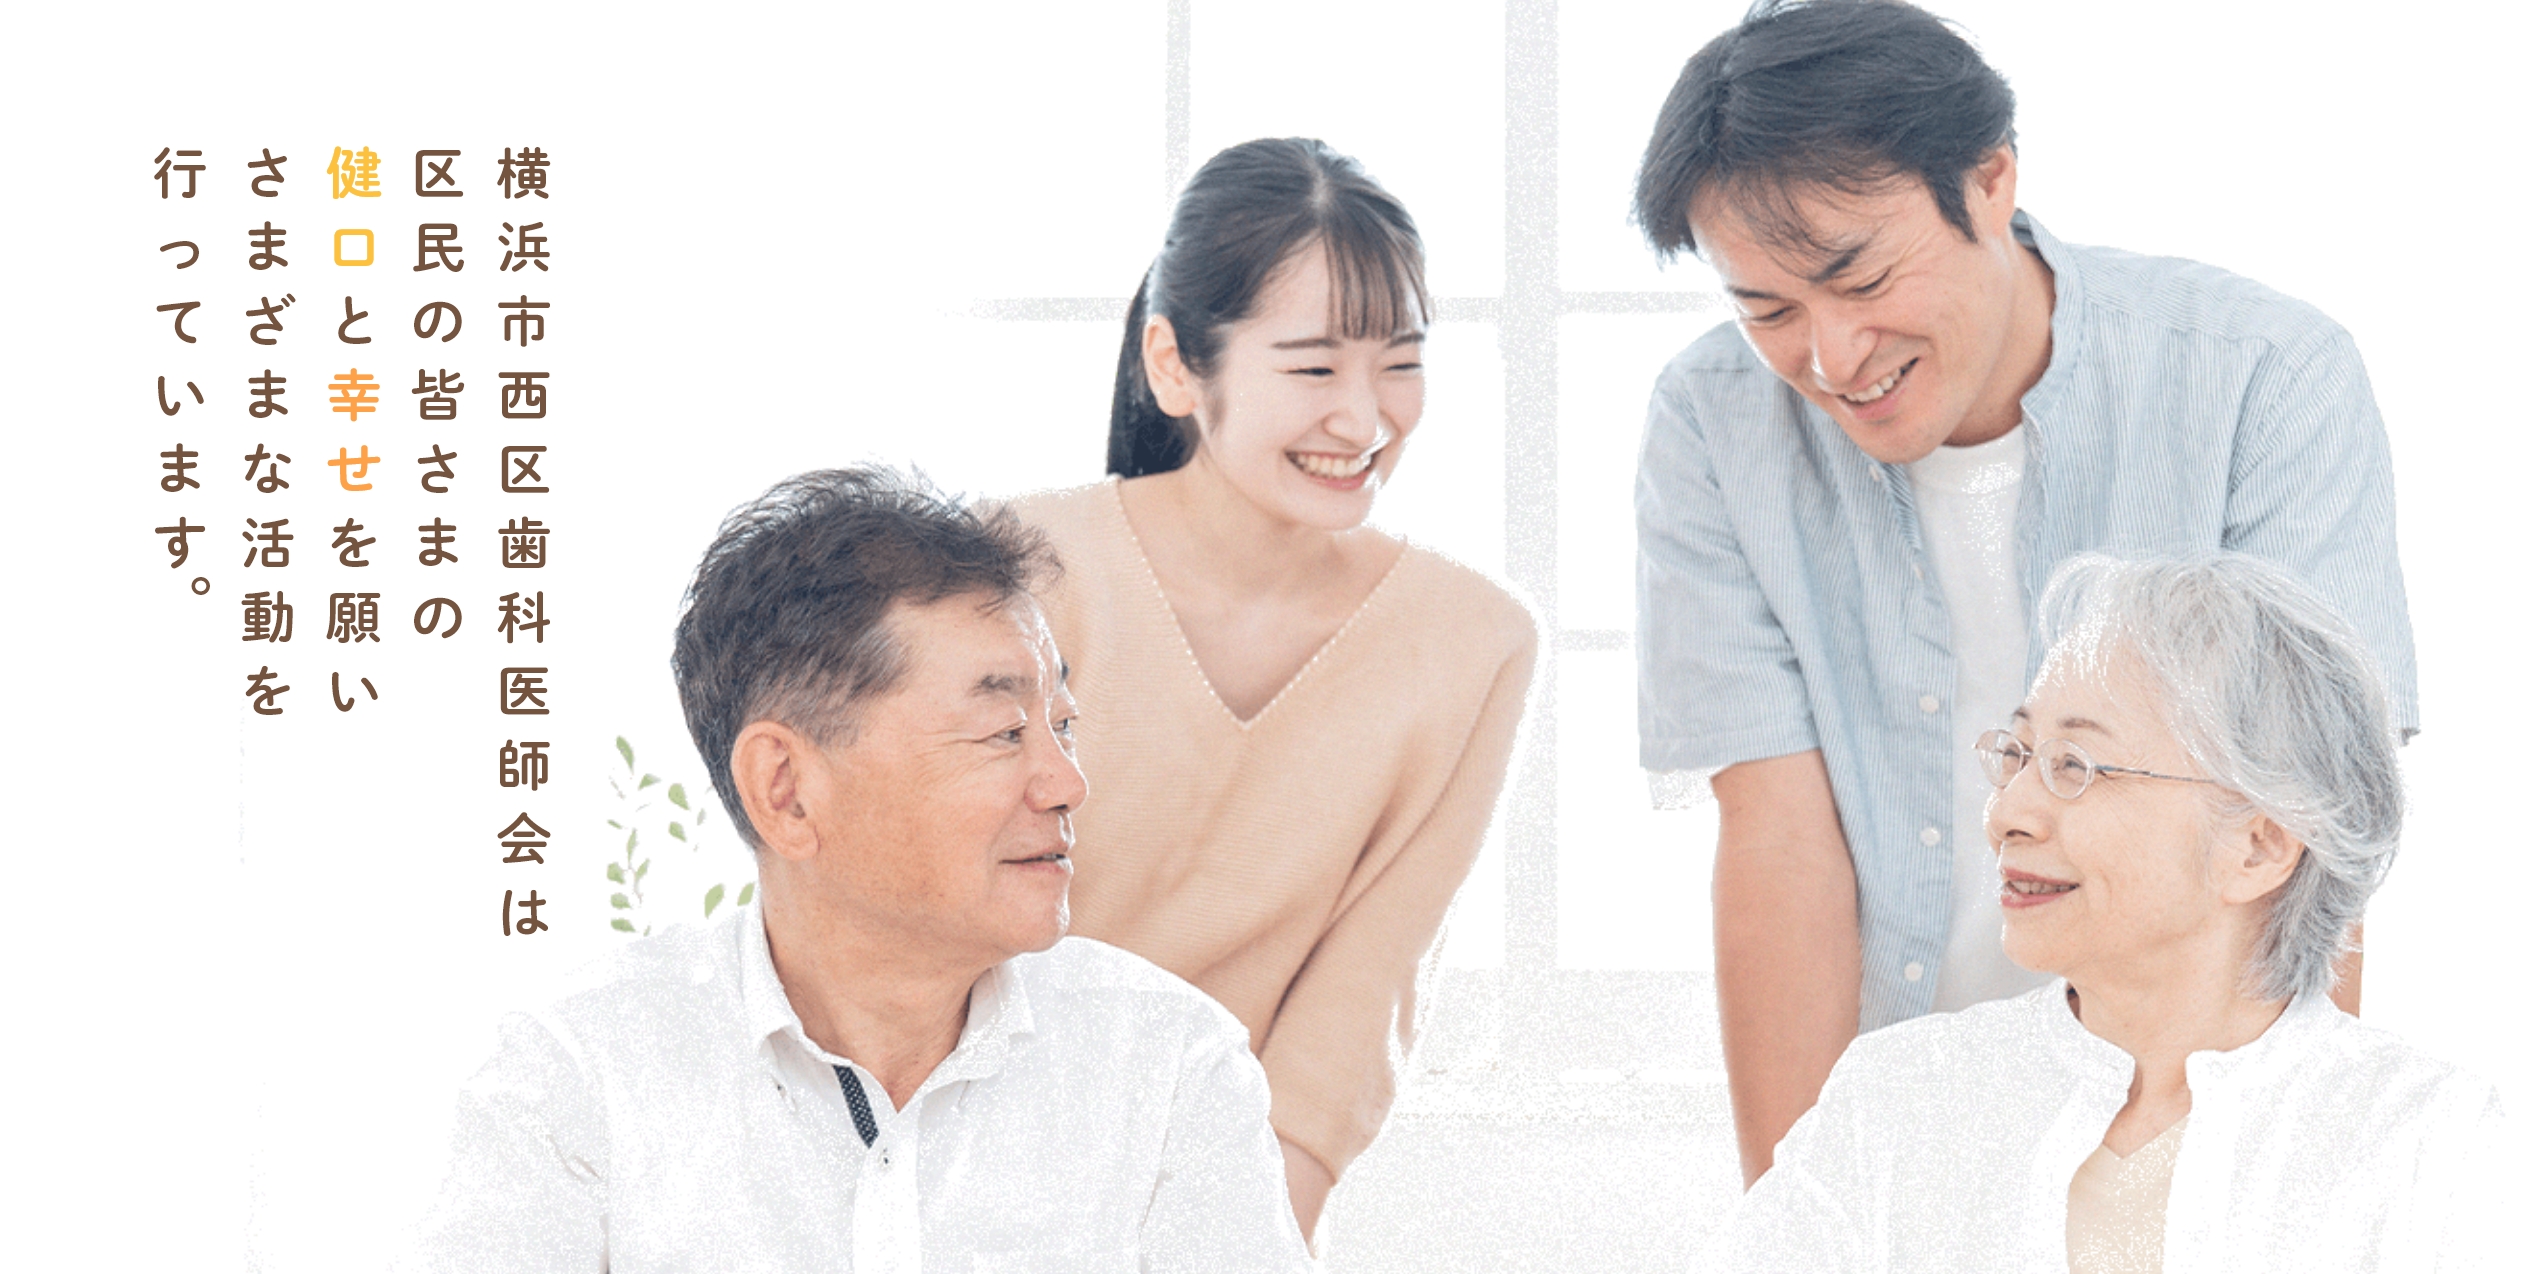 横浜市西区歯科医師会は区民の皆さまの健康と幸せを願いさまざまな活動を行っています。